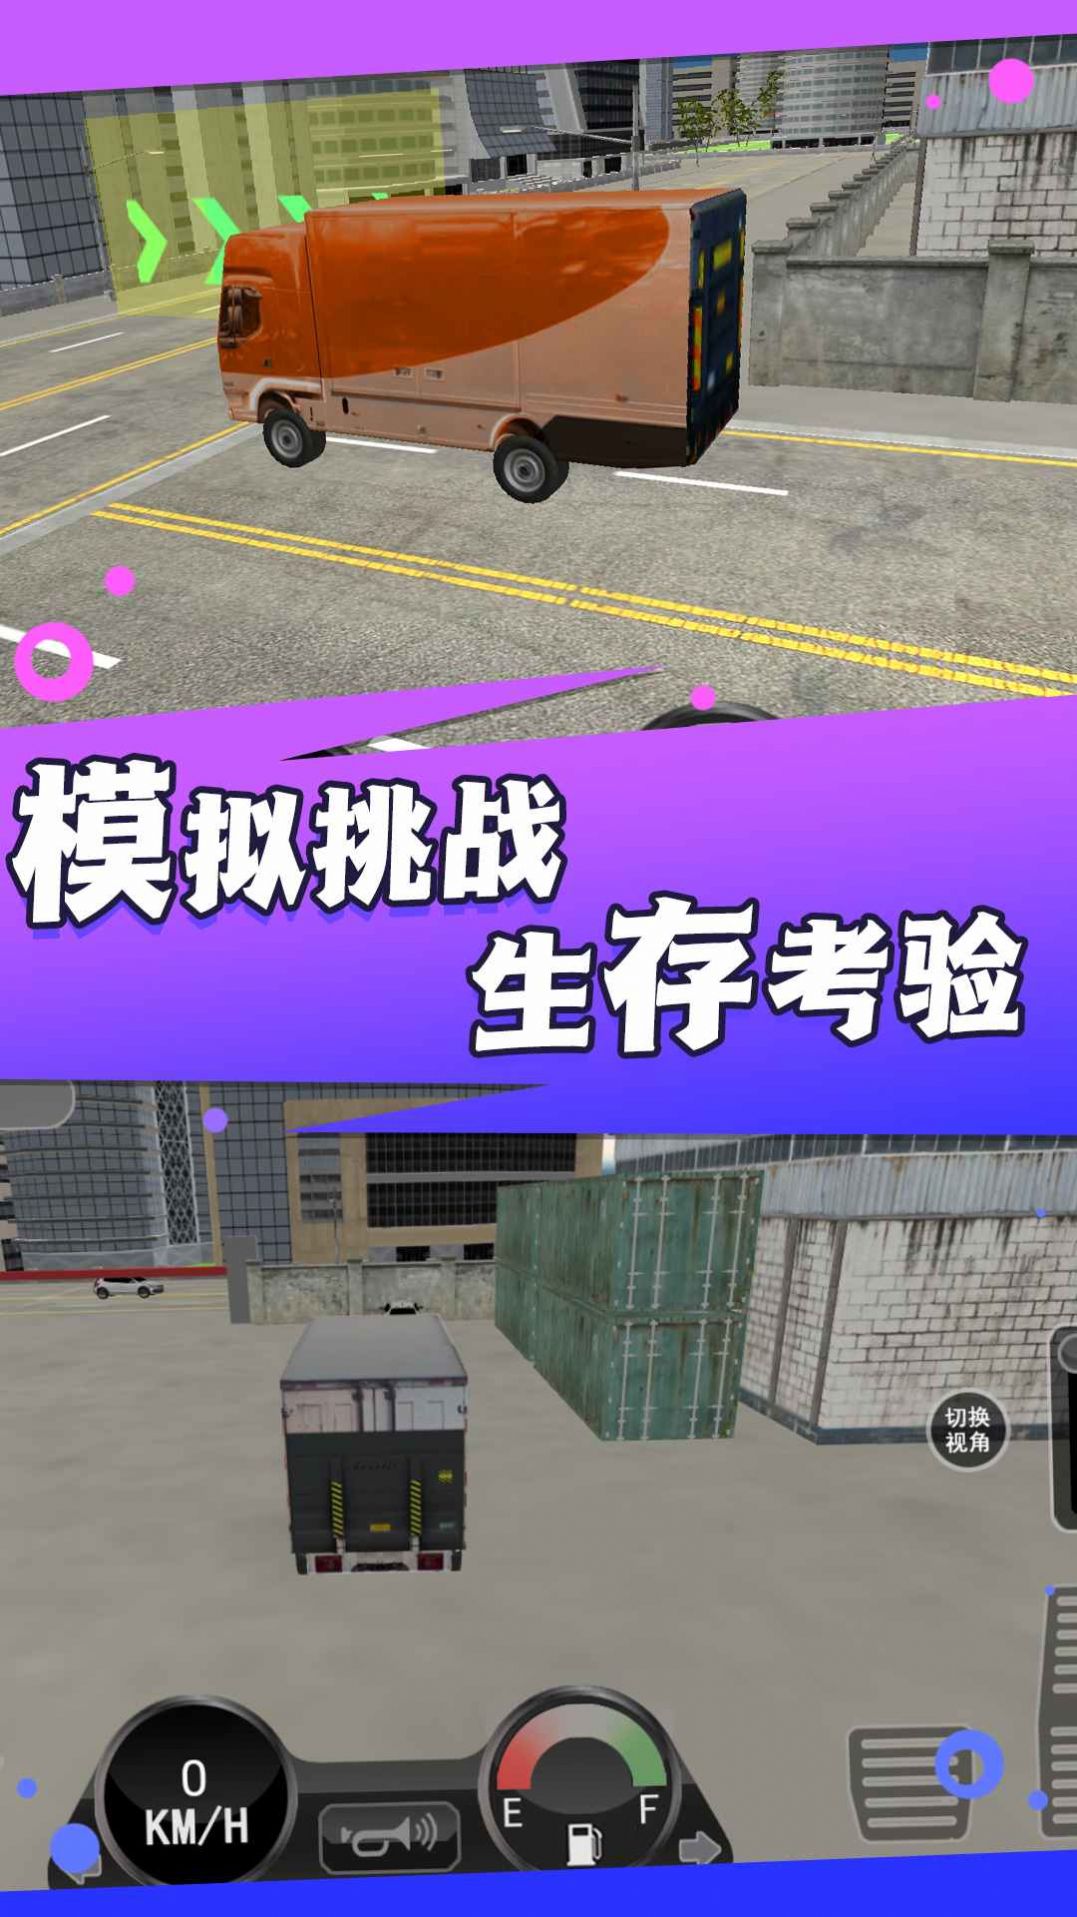 卡车驾驭运输大师游戏中文版截图2: